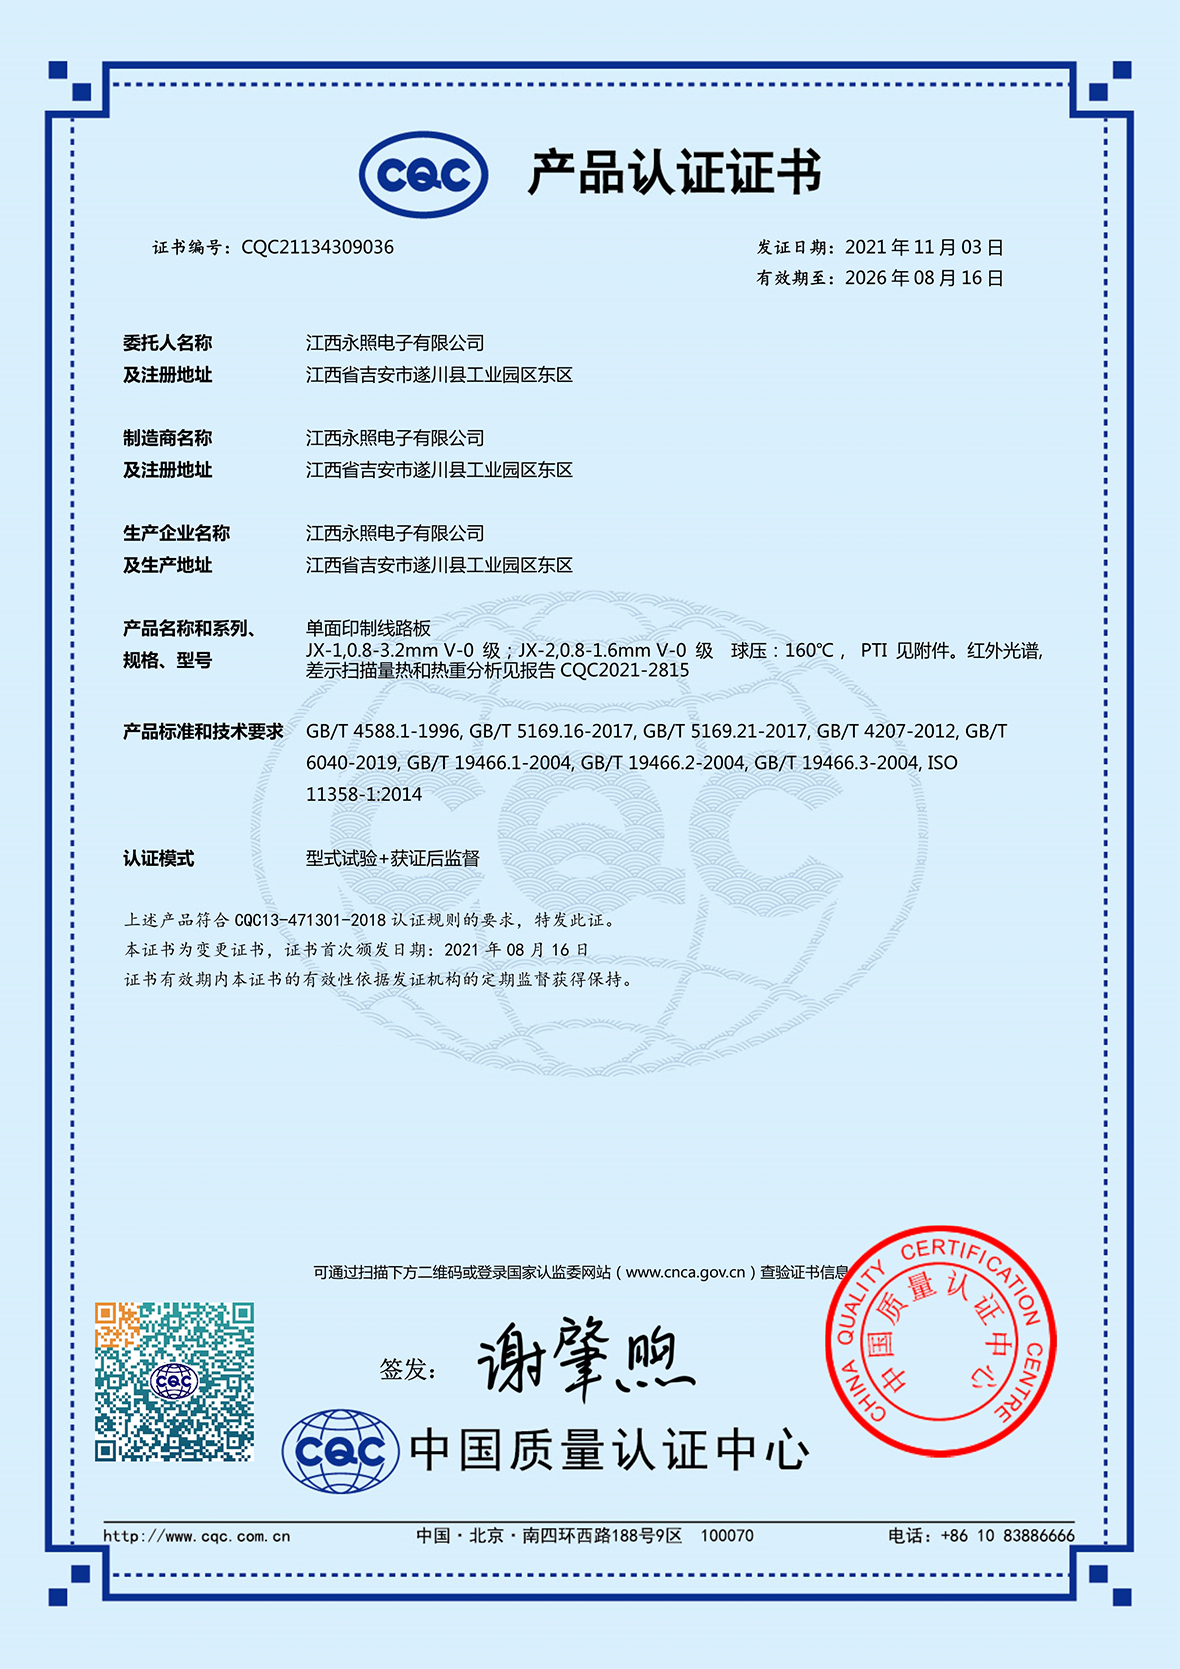 CQC中文证书